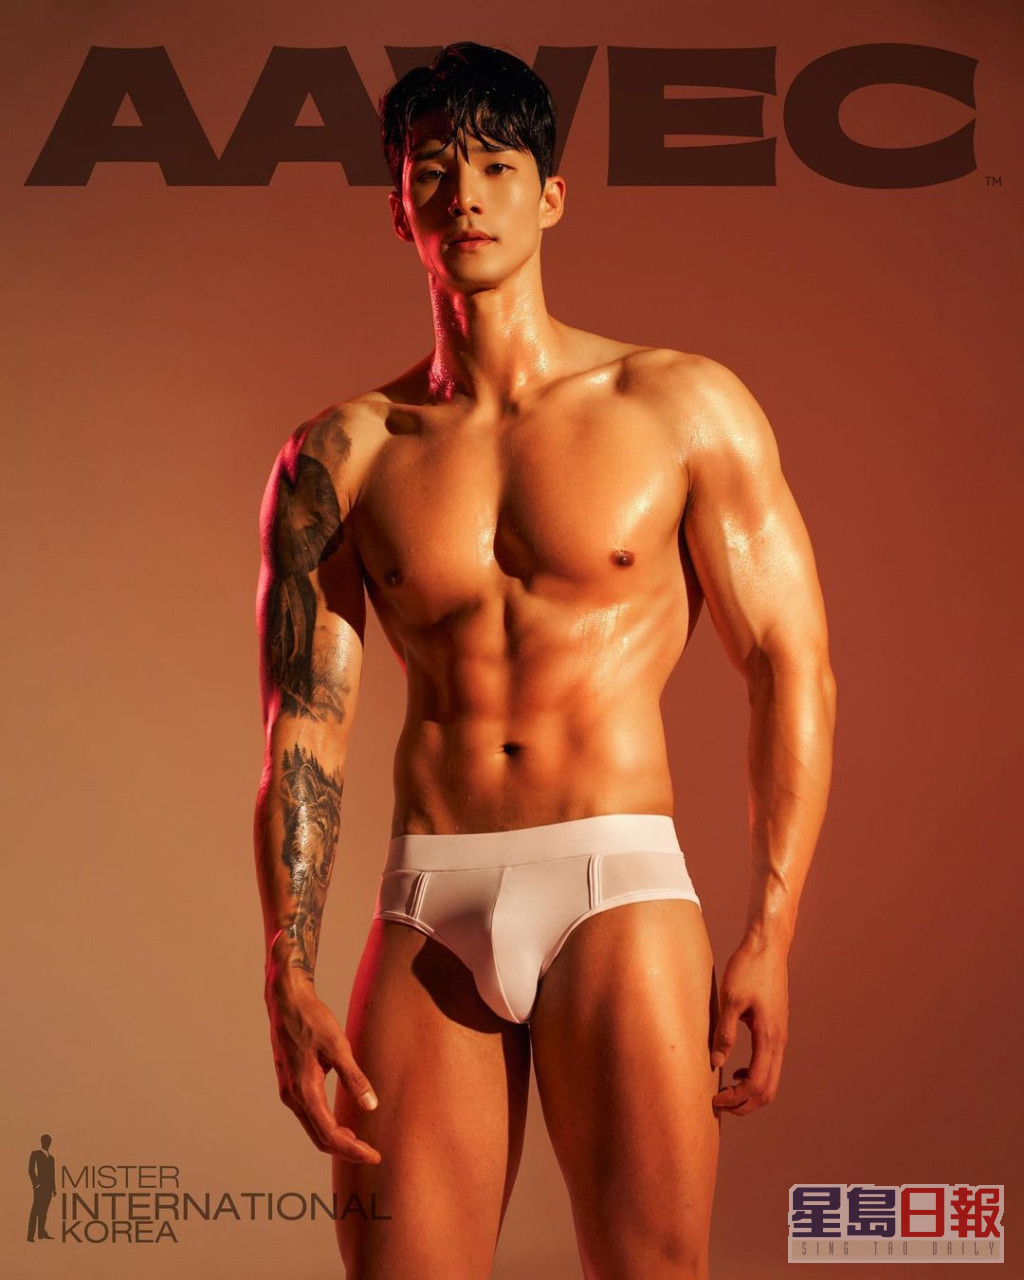 20號 김태범 (Kim tae beom)  年齡：33  身高：185cm  體重：82kg  職業：跆拳道選手、髮型師